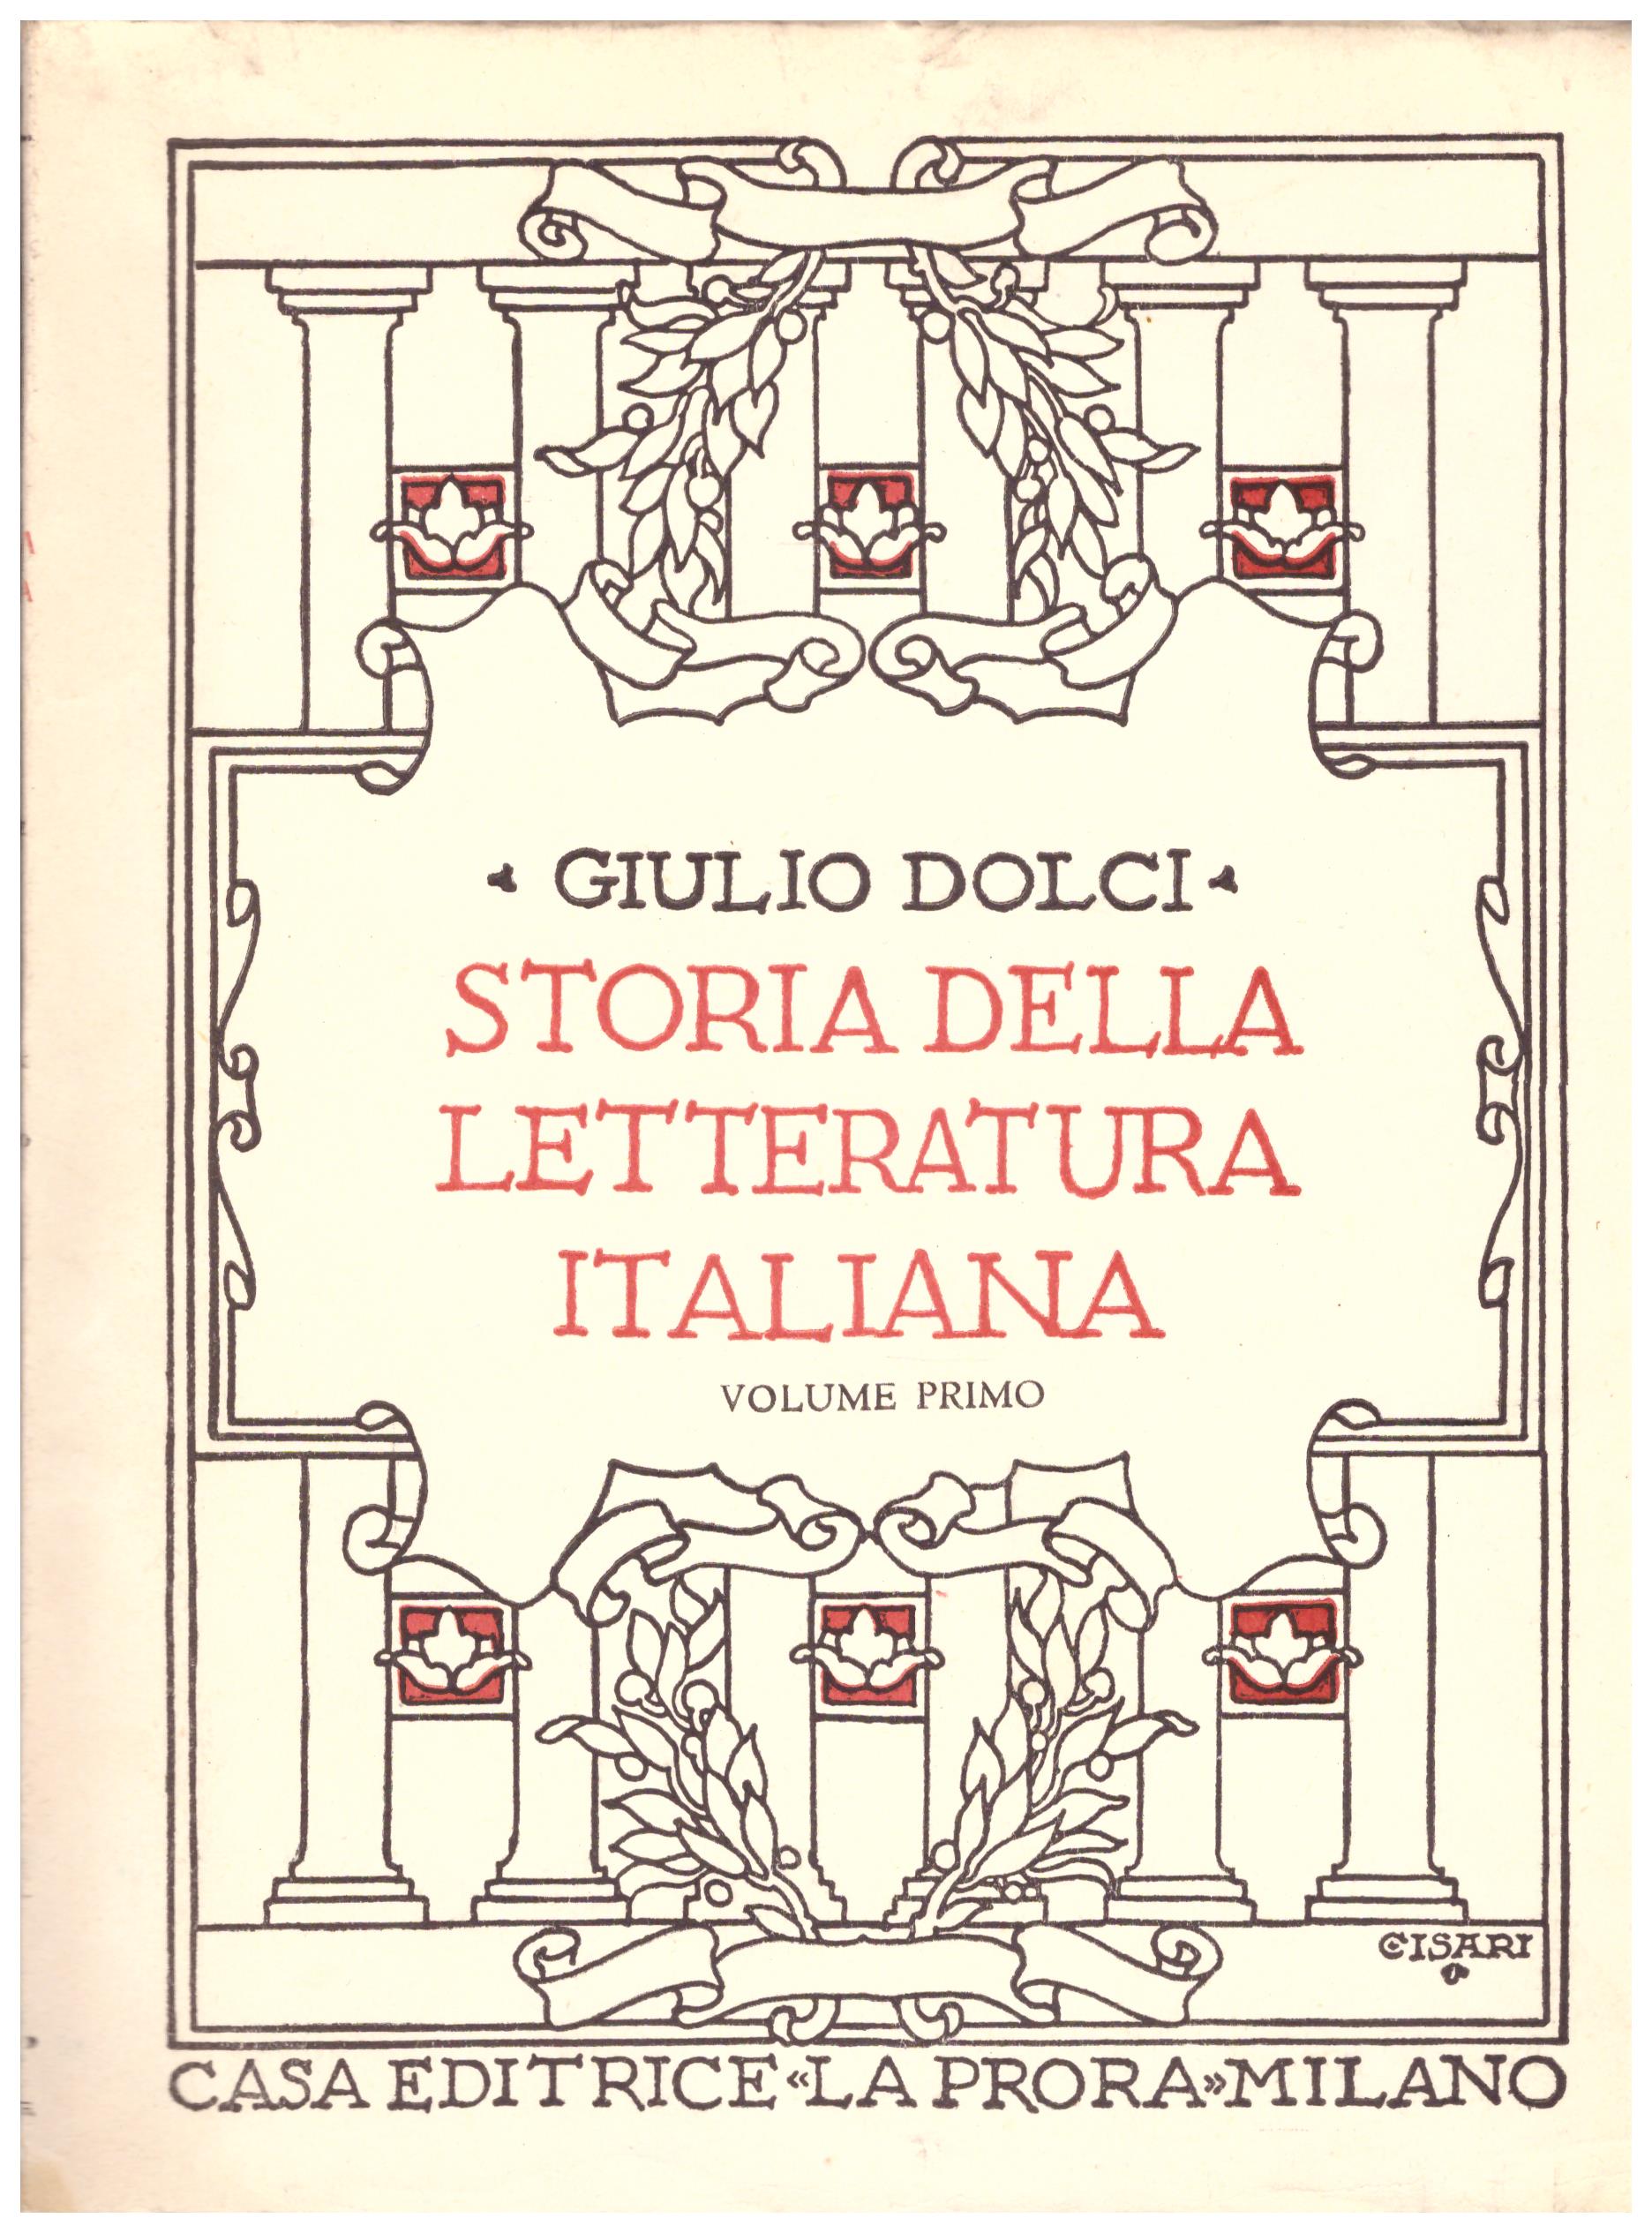 Titolo: Storia della letteratura italiane volume primo Autore: Giulio Dolci  Editore: la prora, Milano 1952